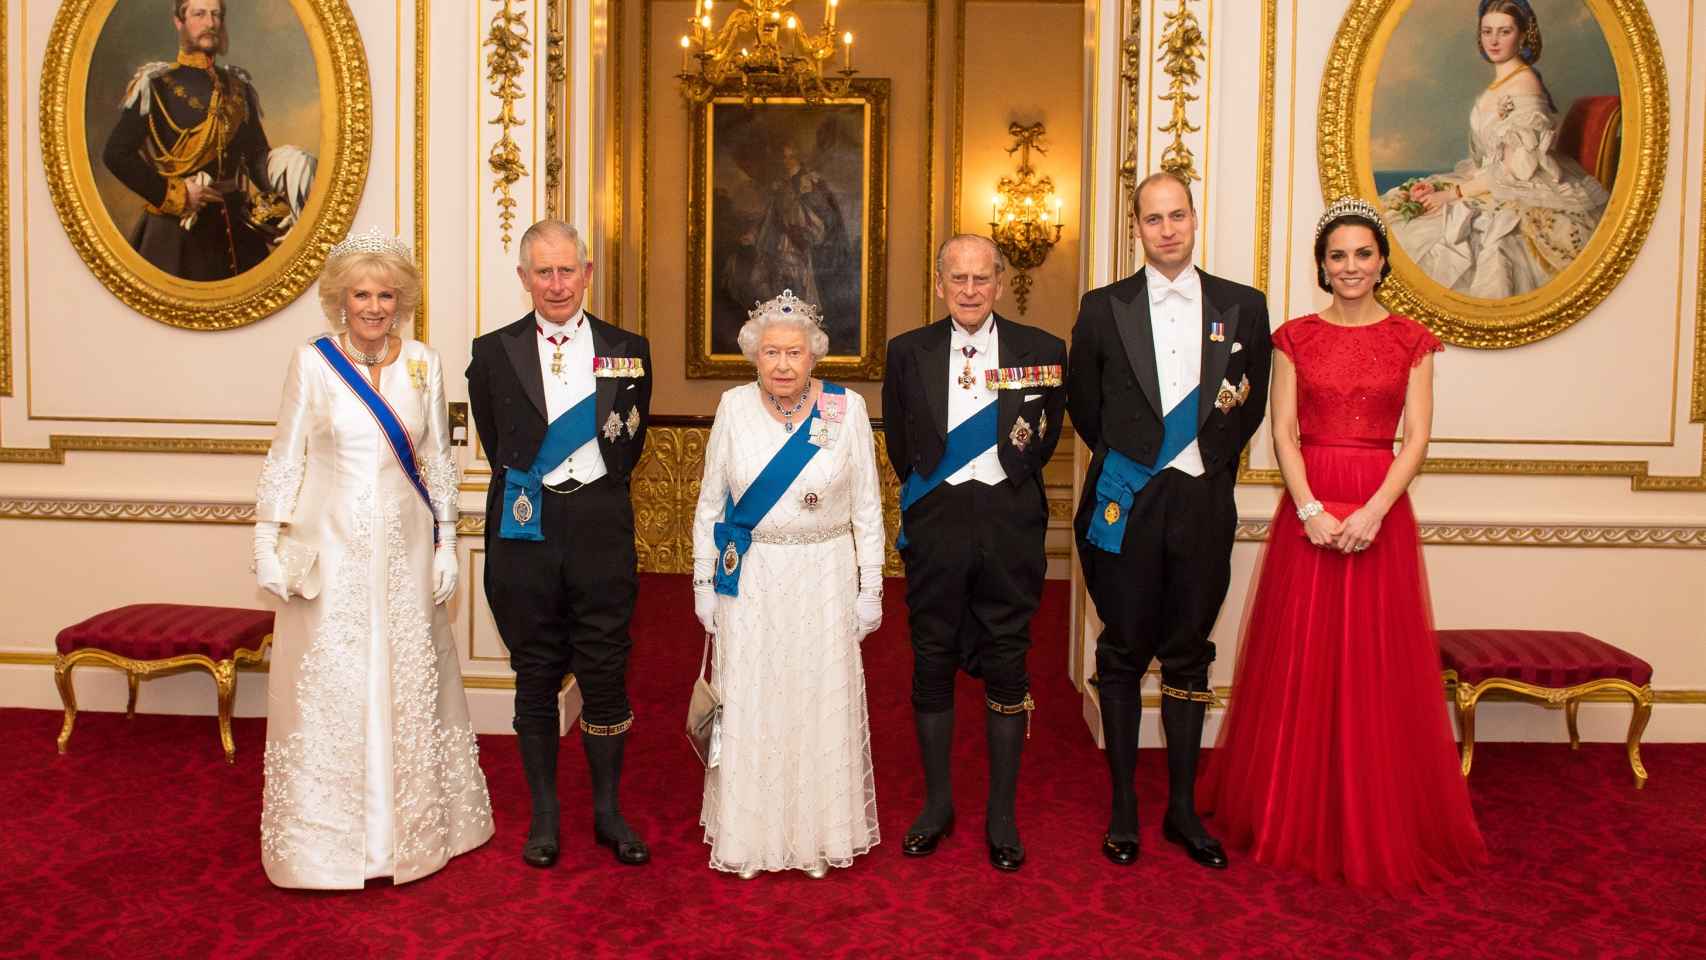 De izquierda a derecha. Camila Parker Bowles junto a su esposo el príncipe Carlos de Gales, la reina Isabel II junto a su marido Felipe de Edimburgo y los duques de Cambridge Guillermo de Gales y su esposa Kate Middleton, en una recepción en palacio hace una semana.